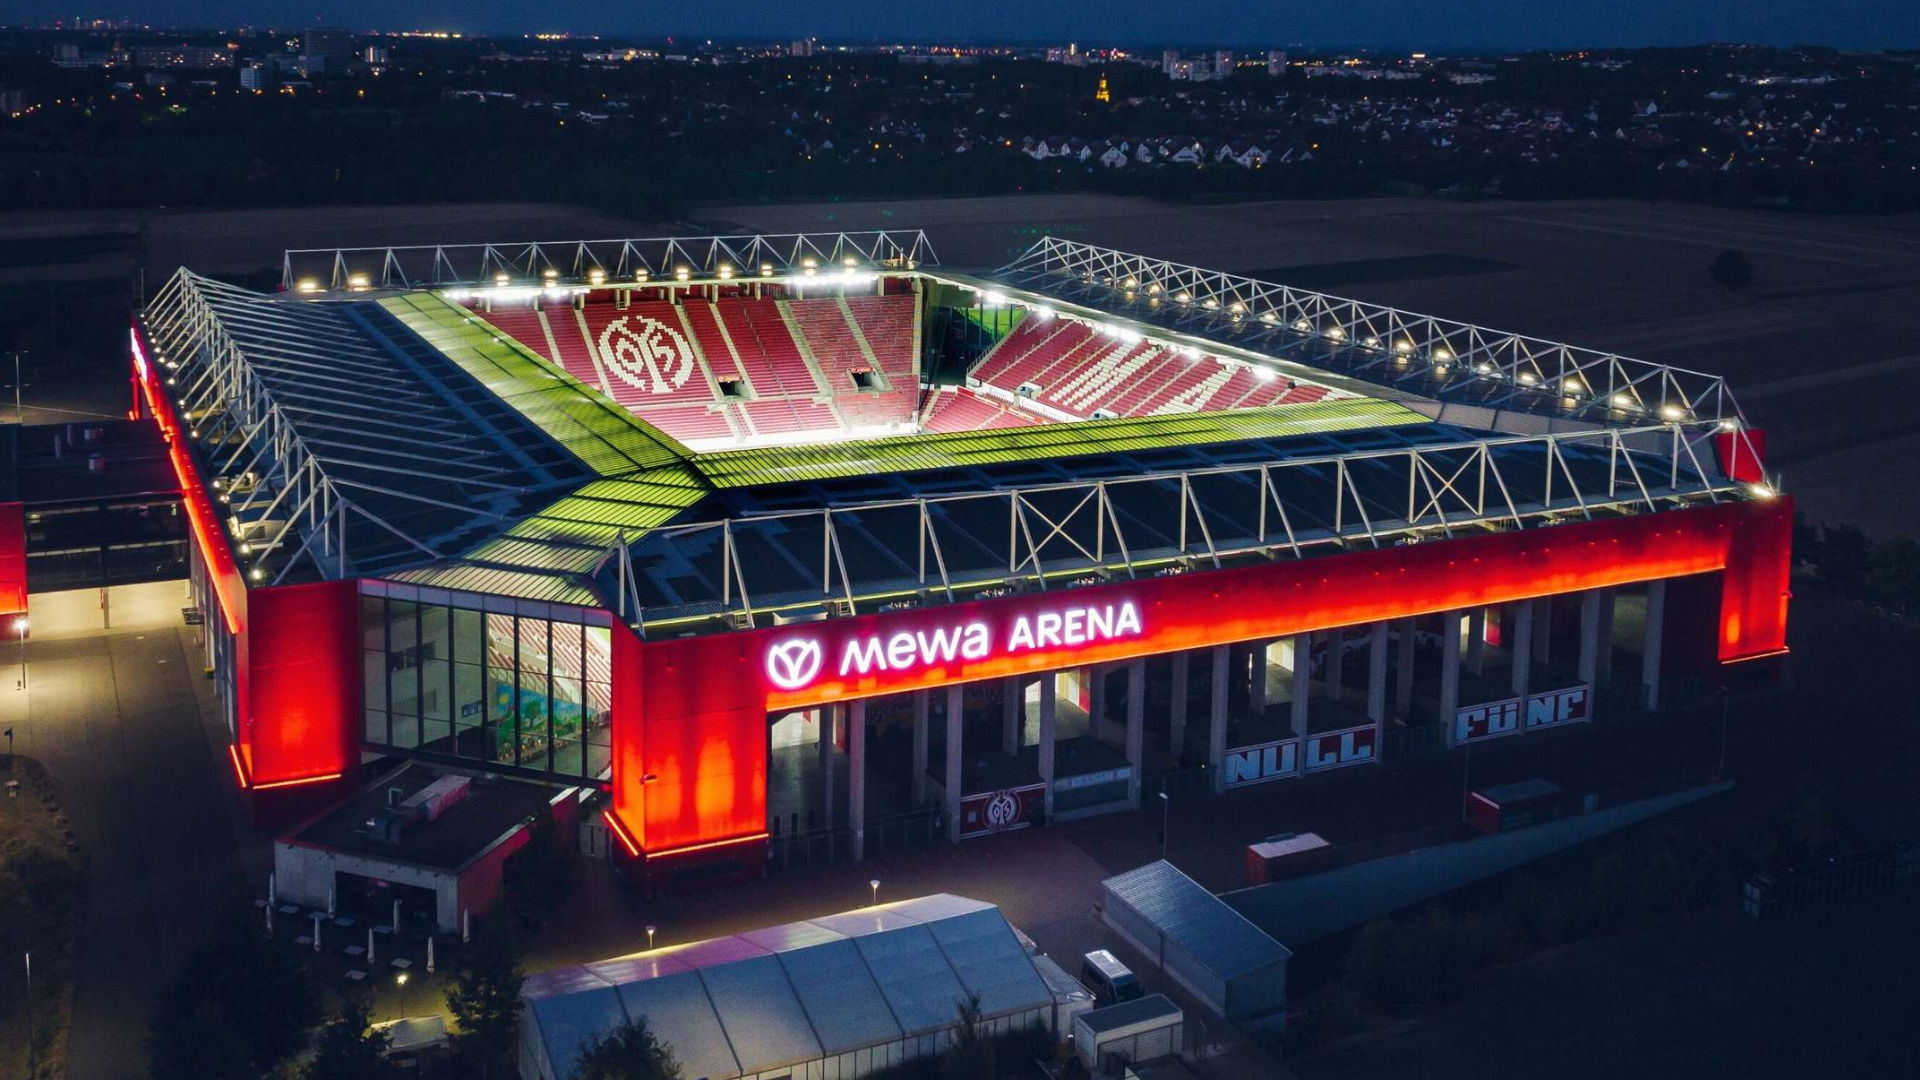 Perú vs Alemania: Mewa Arena, el moderno estadio donde jugarán amistoso por fecha FIFA